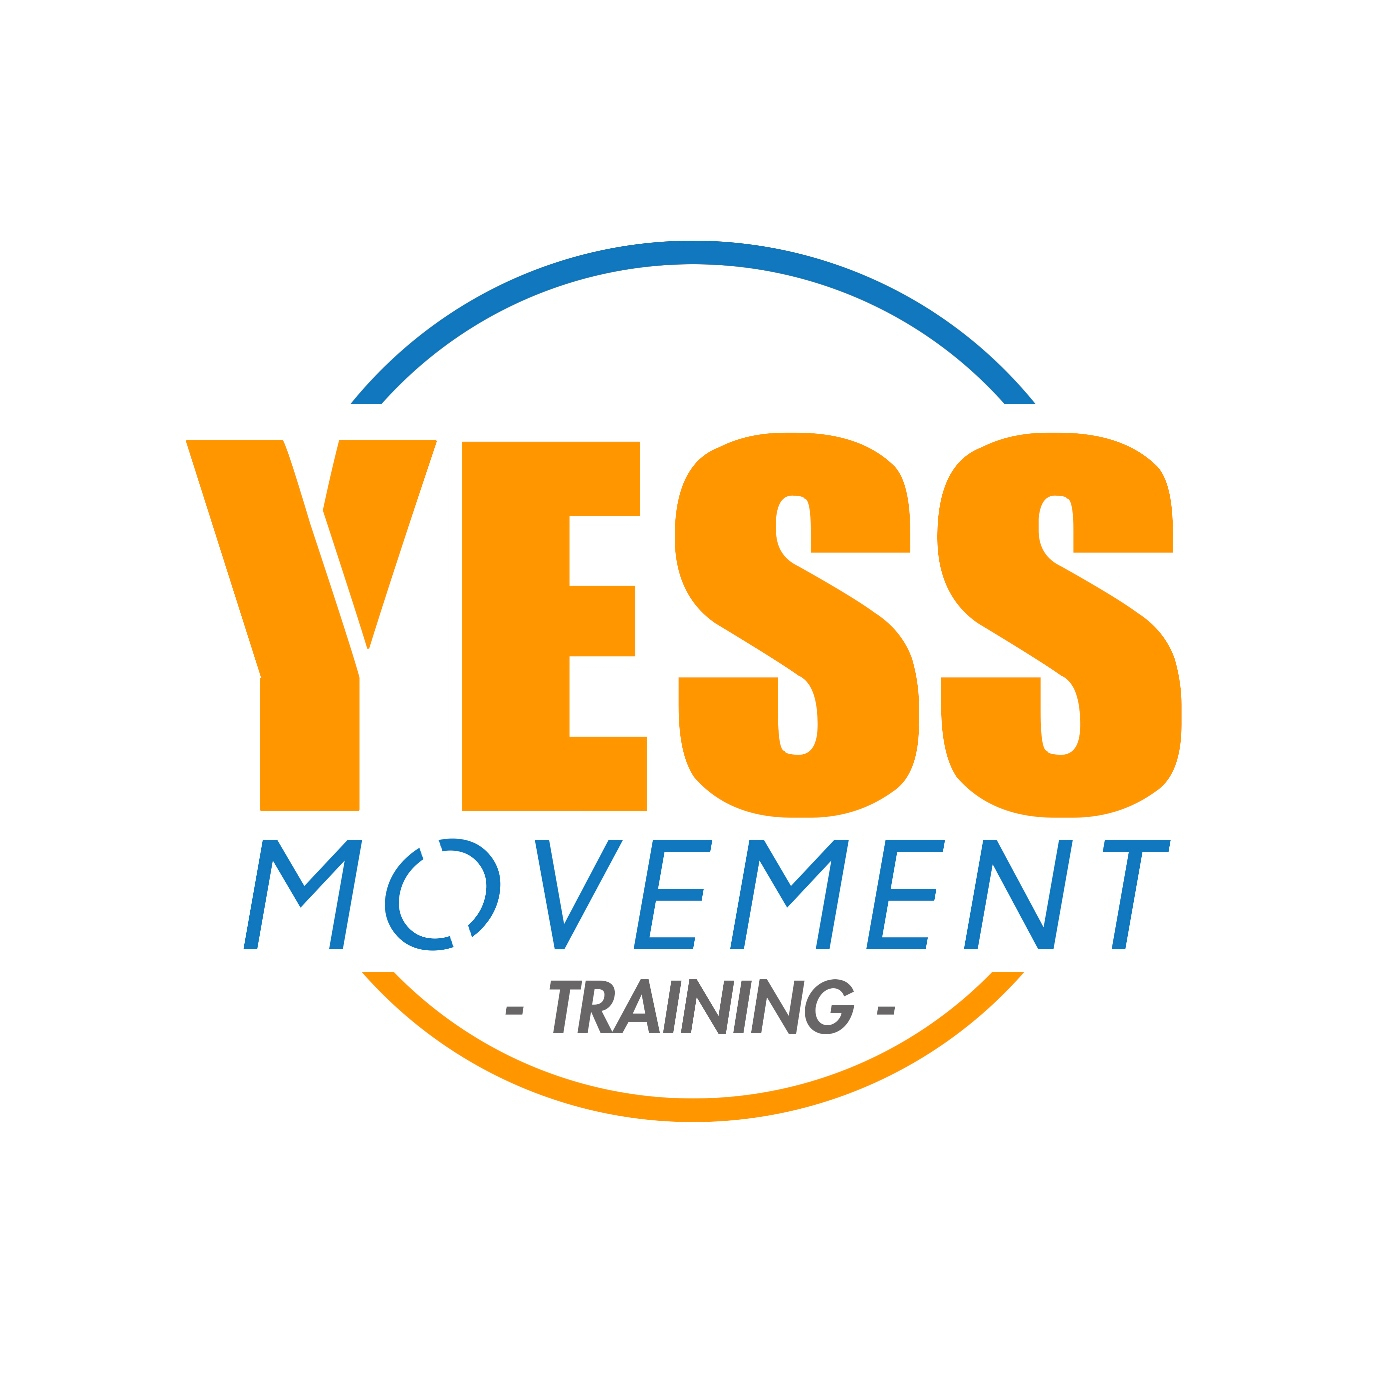 YessMovement Training